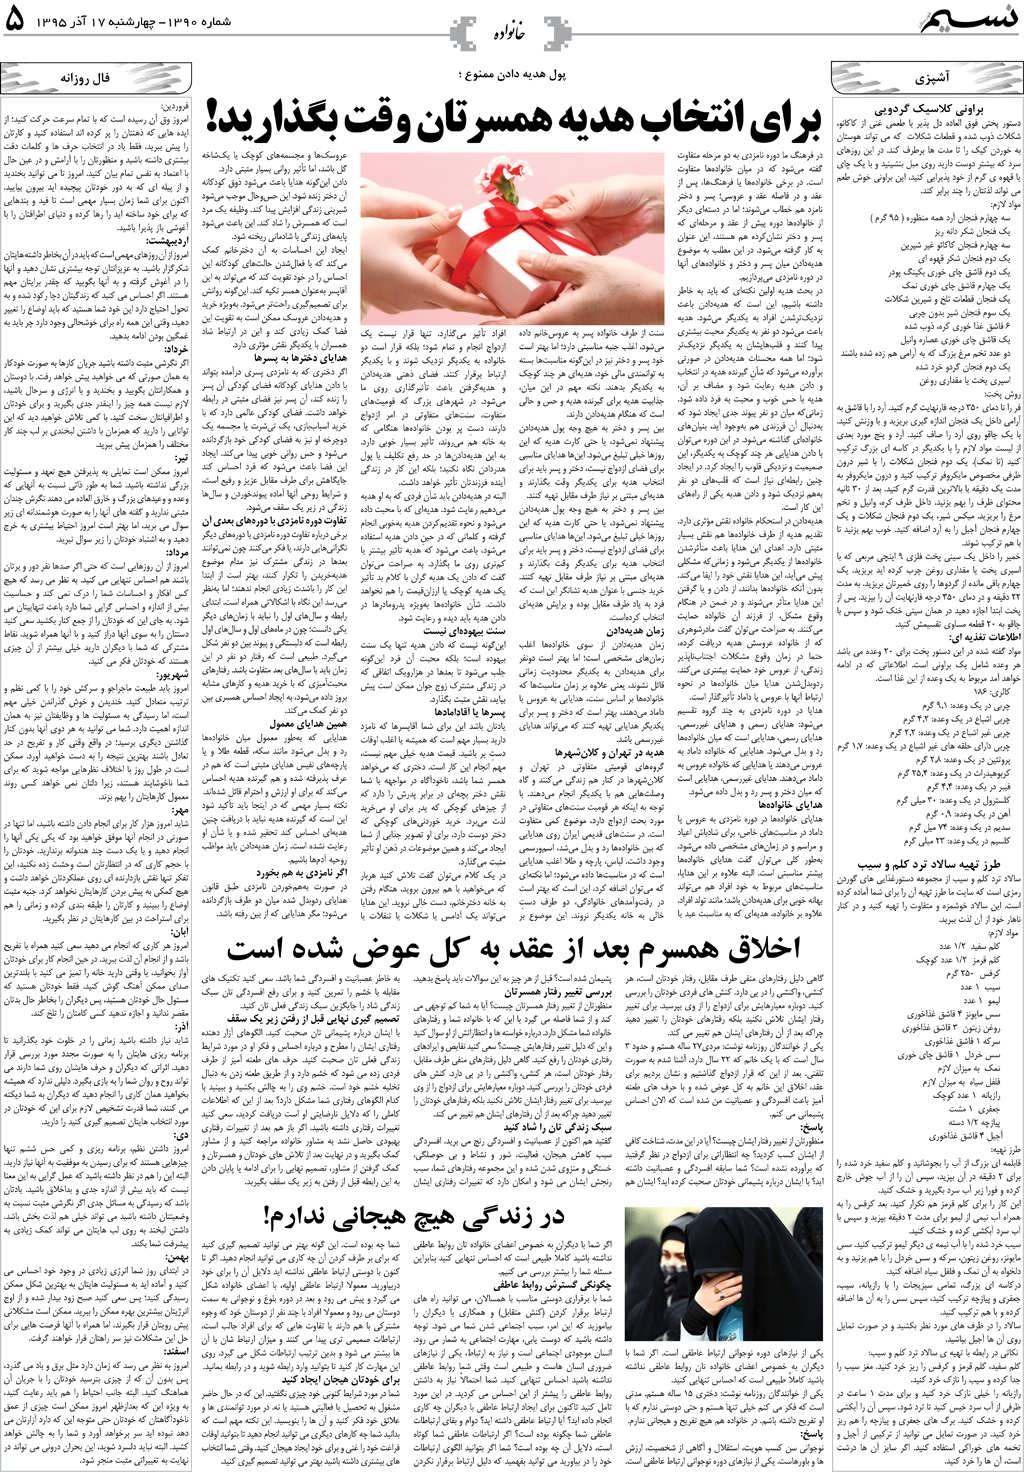 صفحه خانواده روزنامه نسیم شماره 1390